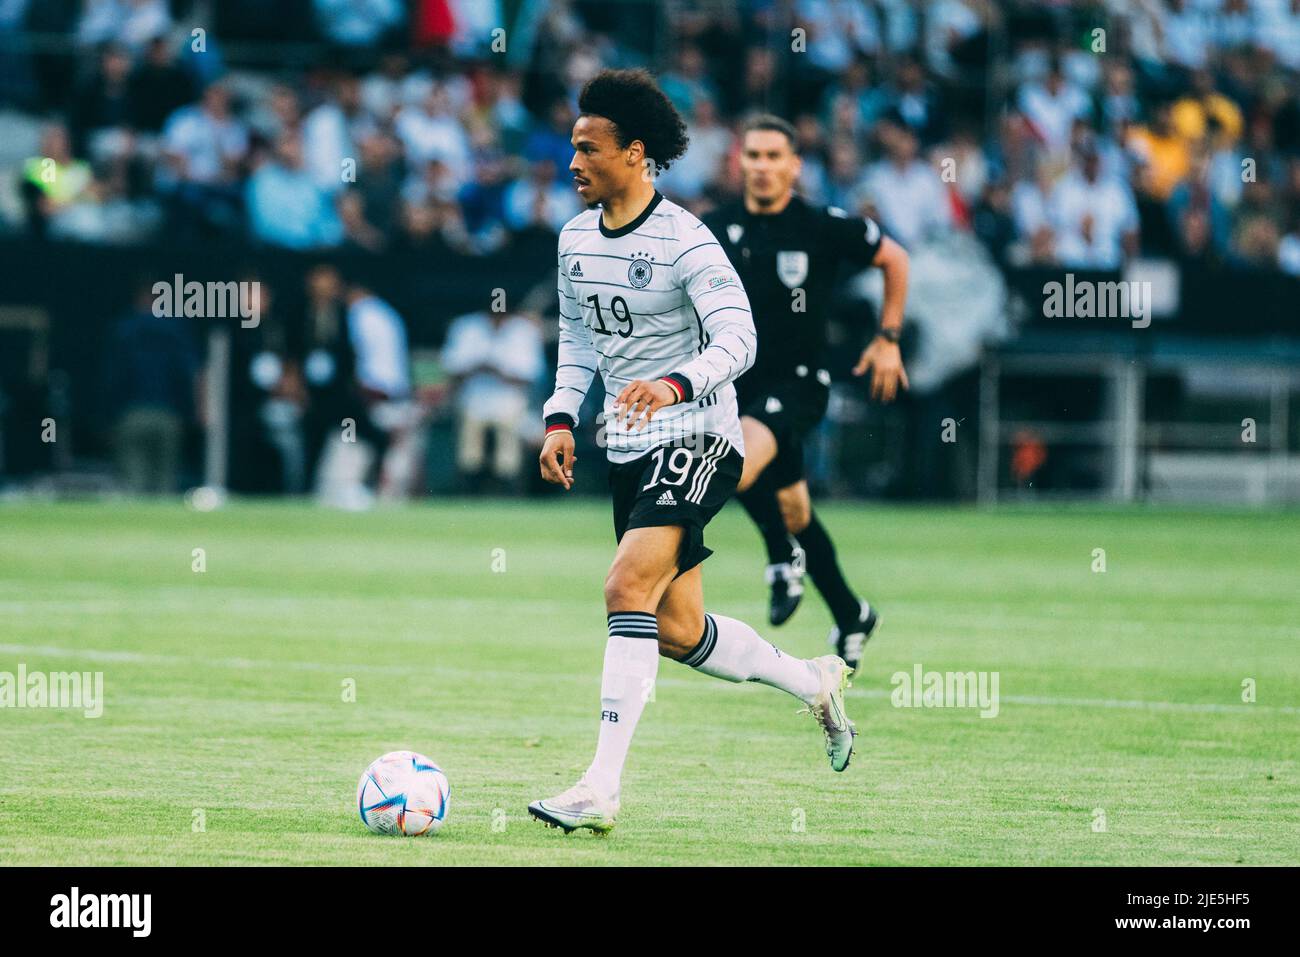 Mönchengladbach, Borussia-Park, 14.06.22: Leroy Sane (Germany) am Ball beim Länderspiel zwischen Deutschland vs. Italien.  Foto: pressefoto Mika Volkm Stock Photo